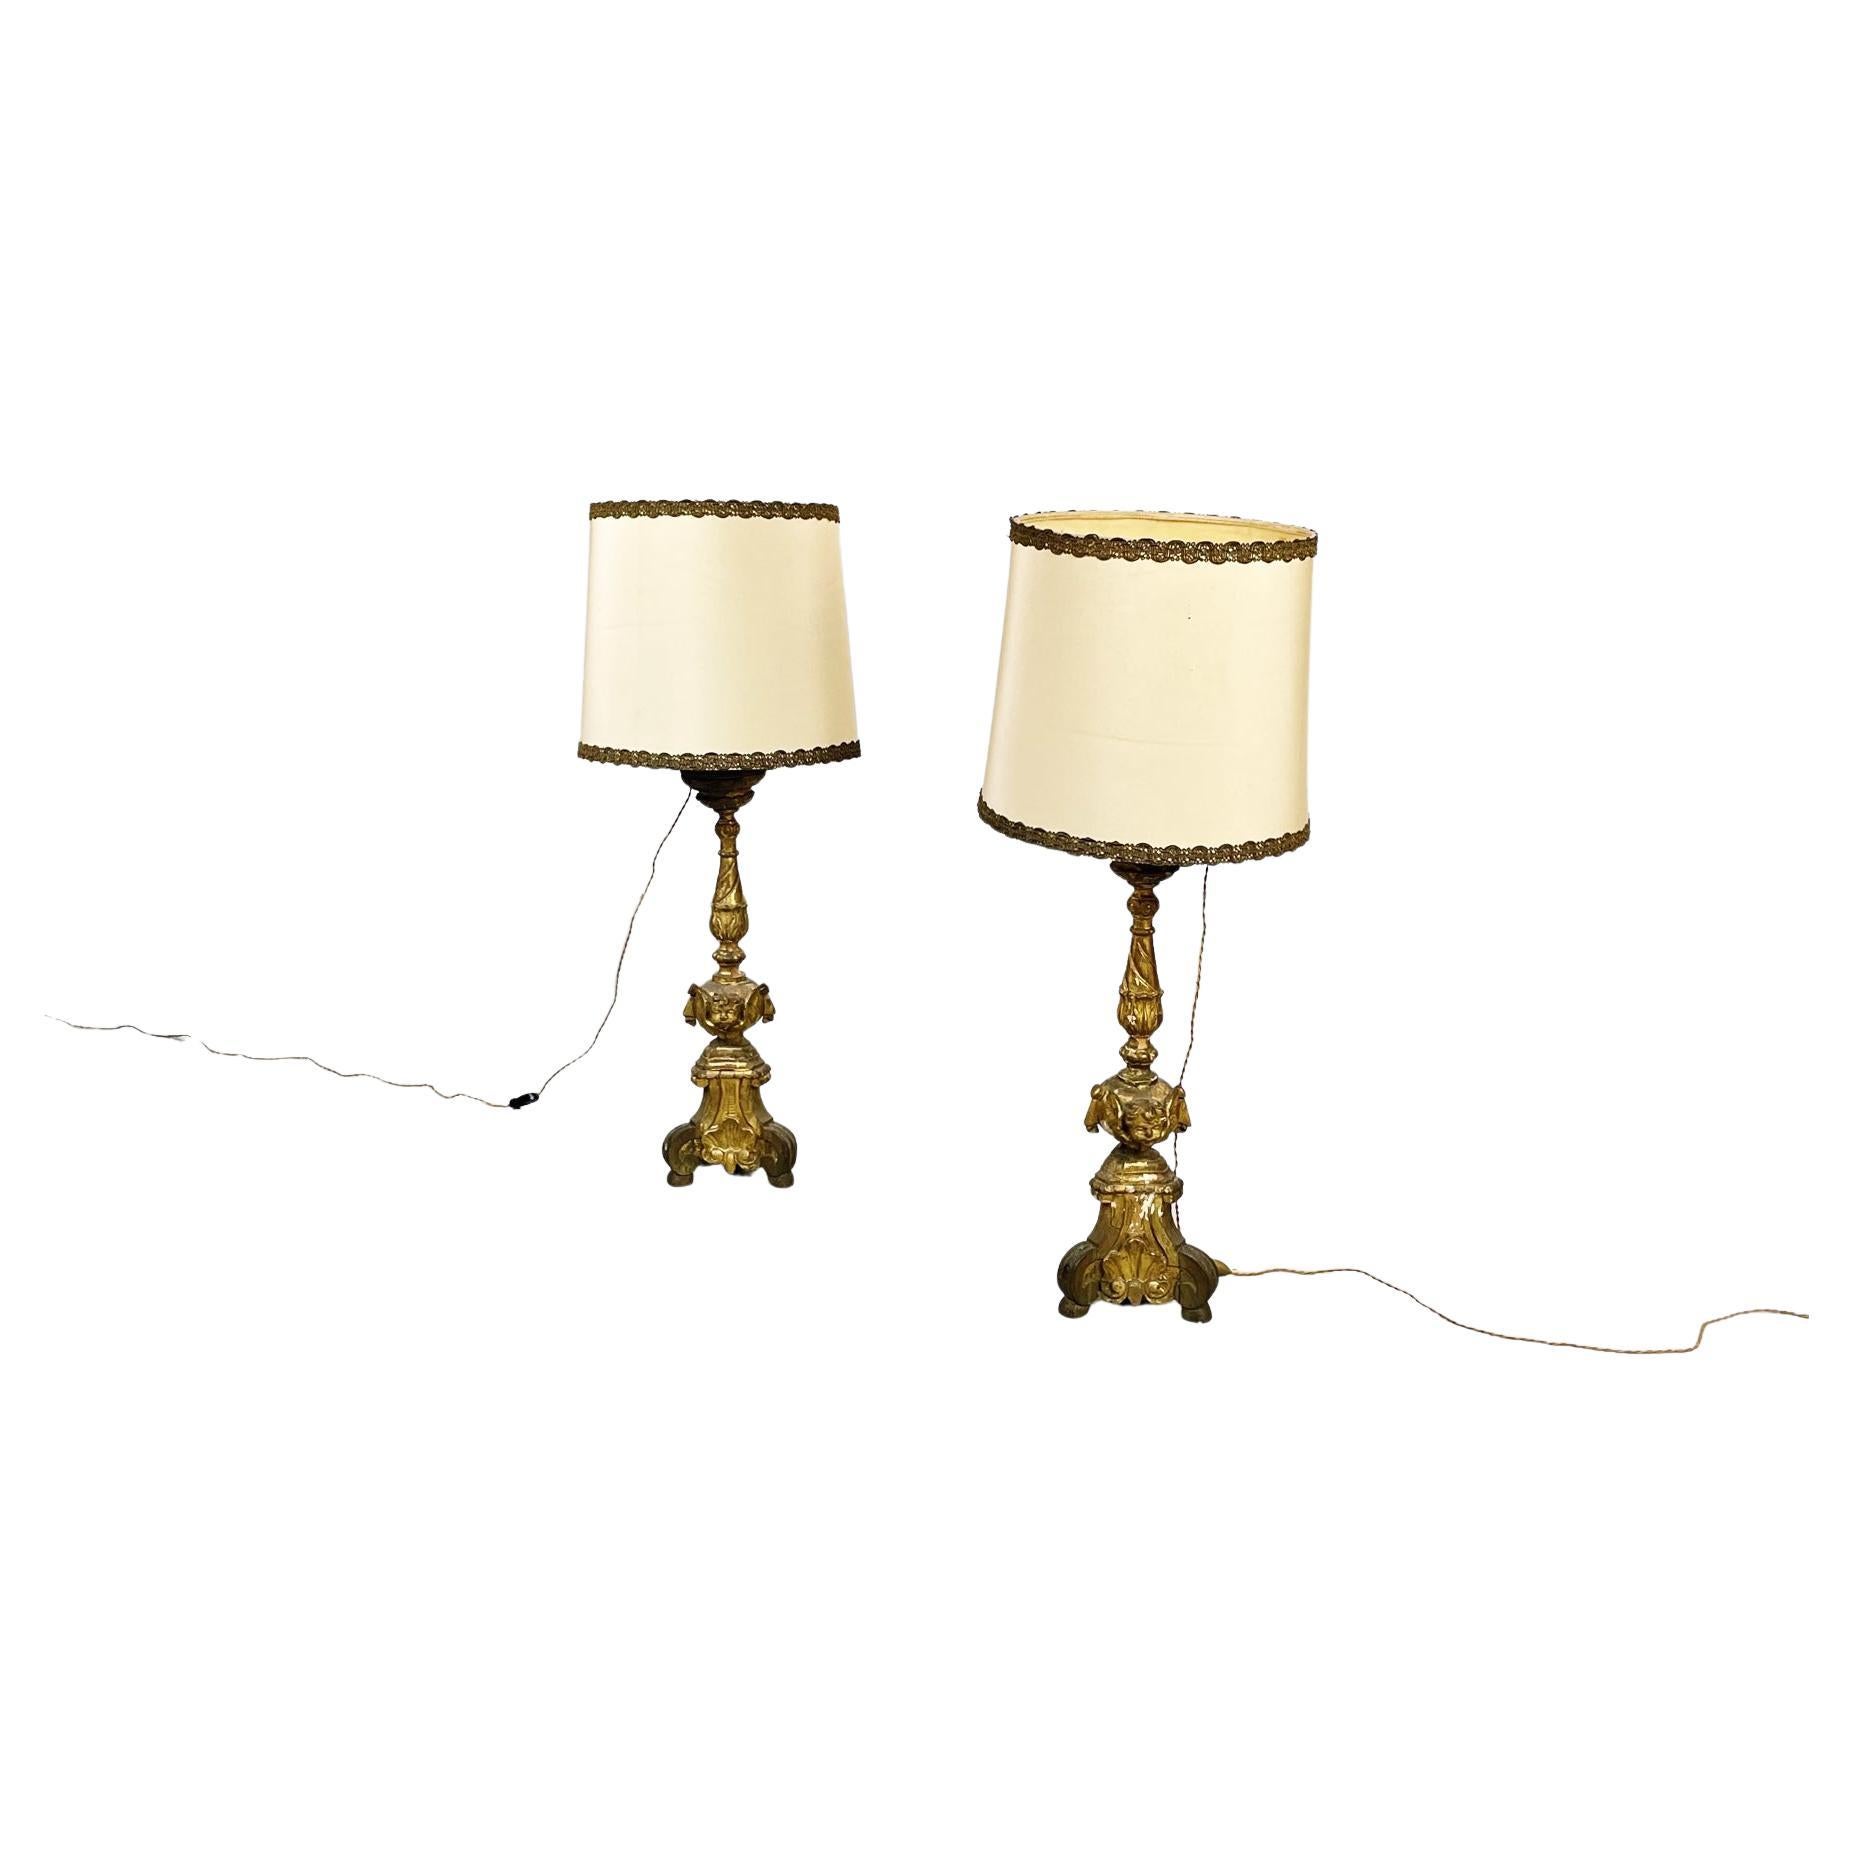 Lampes à candélabre italiennes anciennes en bois peint en or et tissu beige, années 1800 en vente